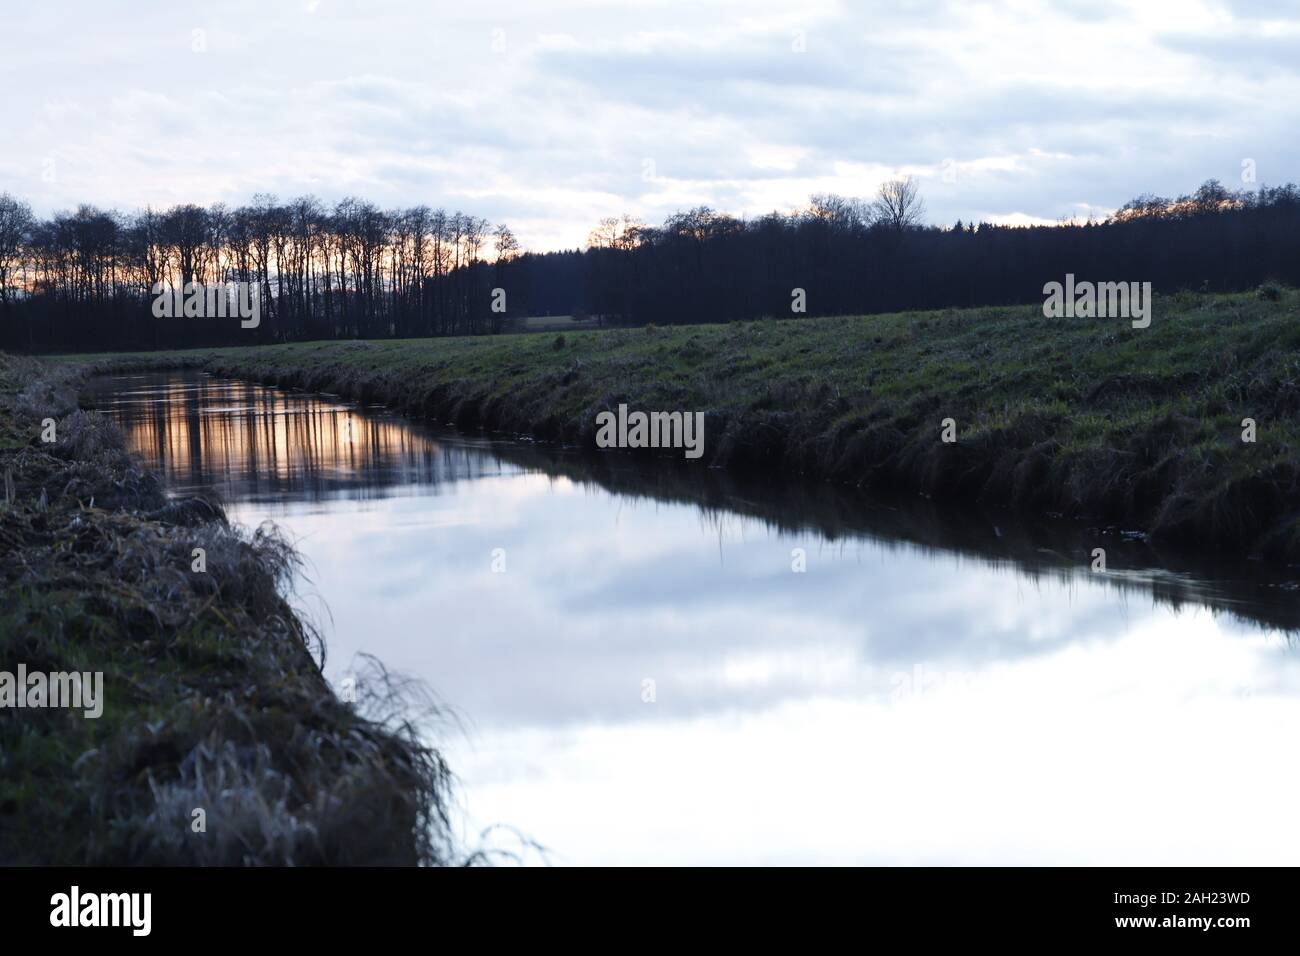 Mittelradde, Ahmsen, Lahn, Fluss Dämmerung, Dezember, Spiegelung, Wasser, Moor Stock Photo